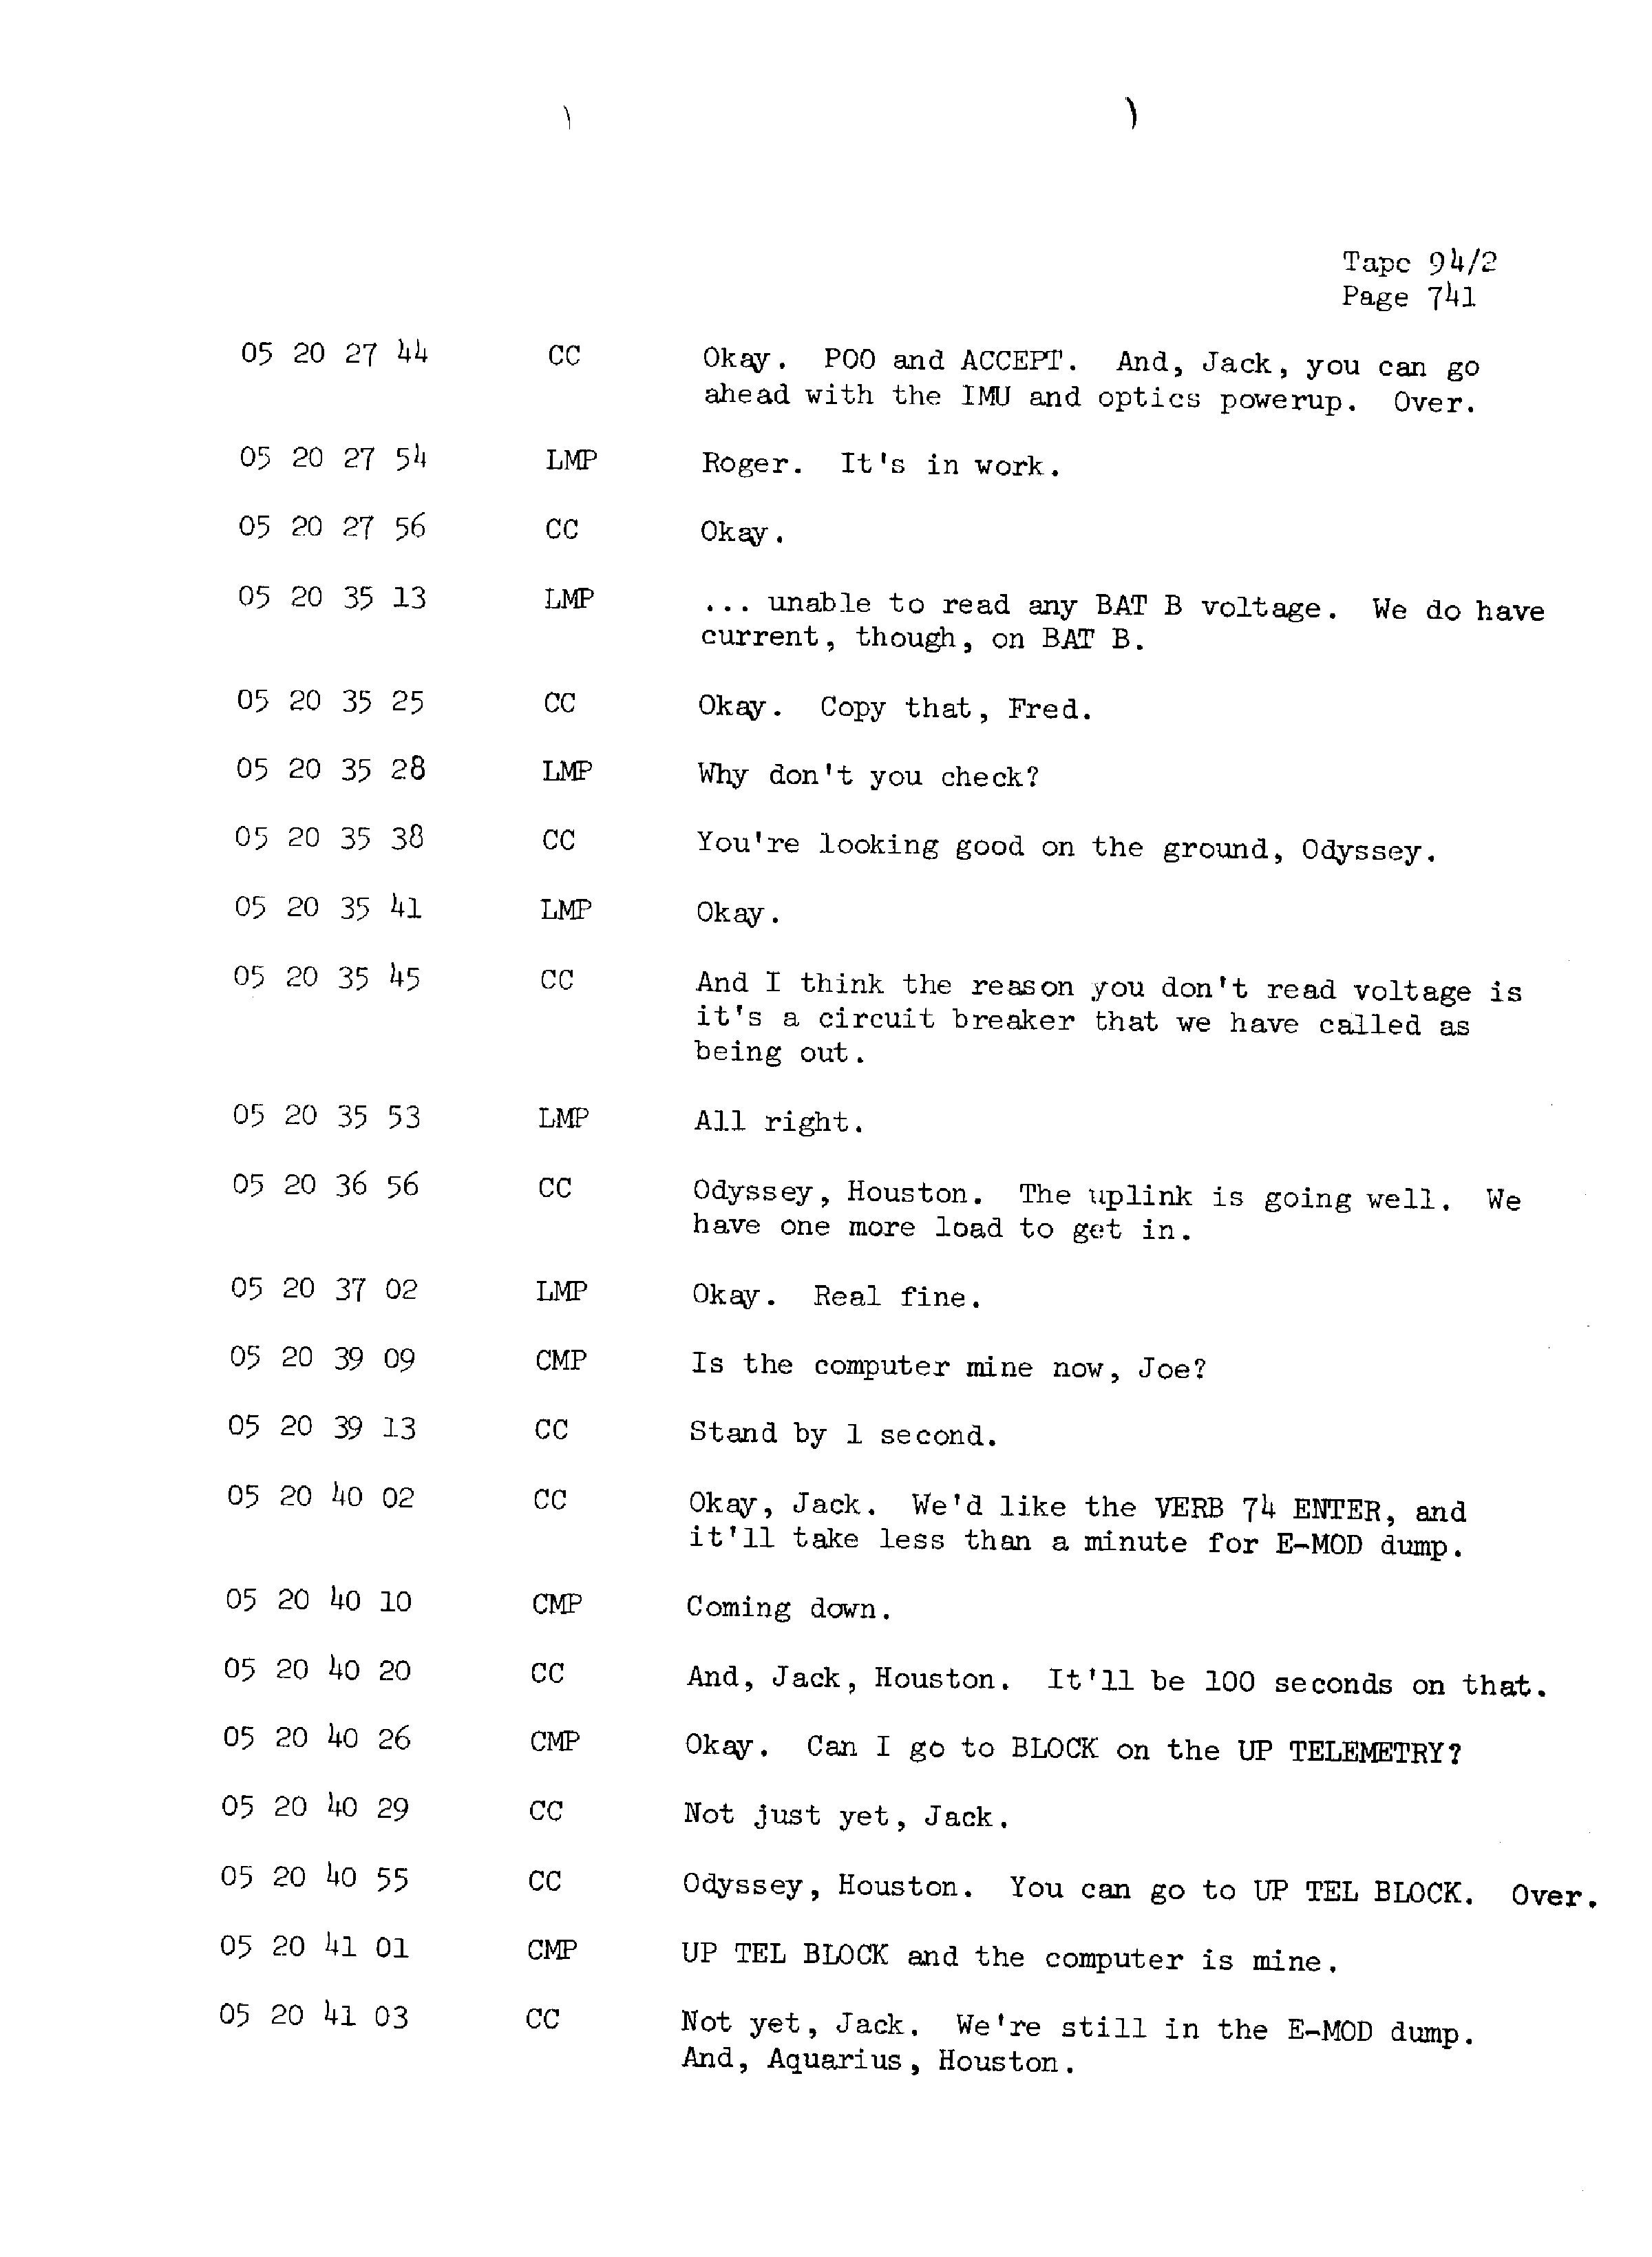 Page 748 of Apollo 13’s original transcript